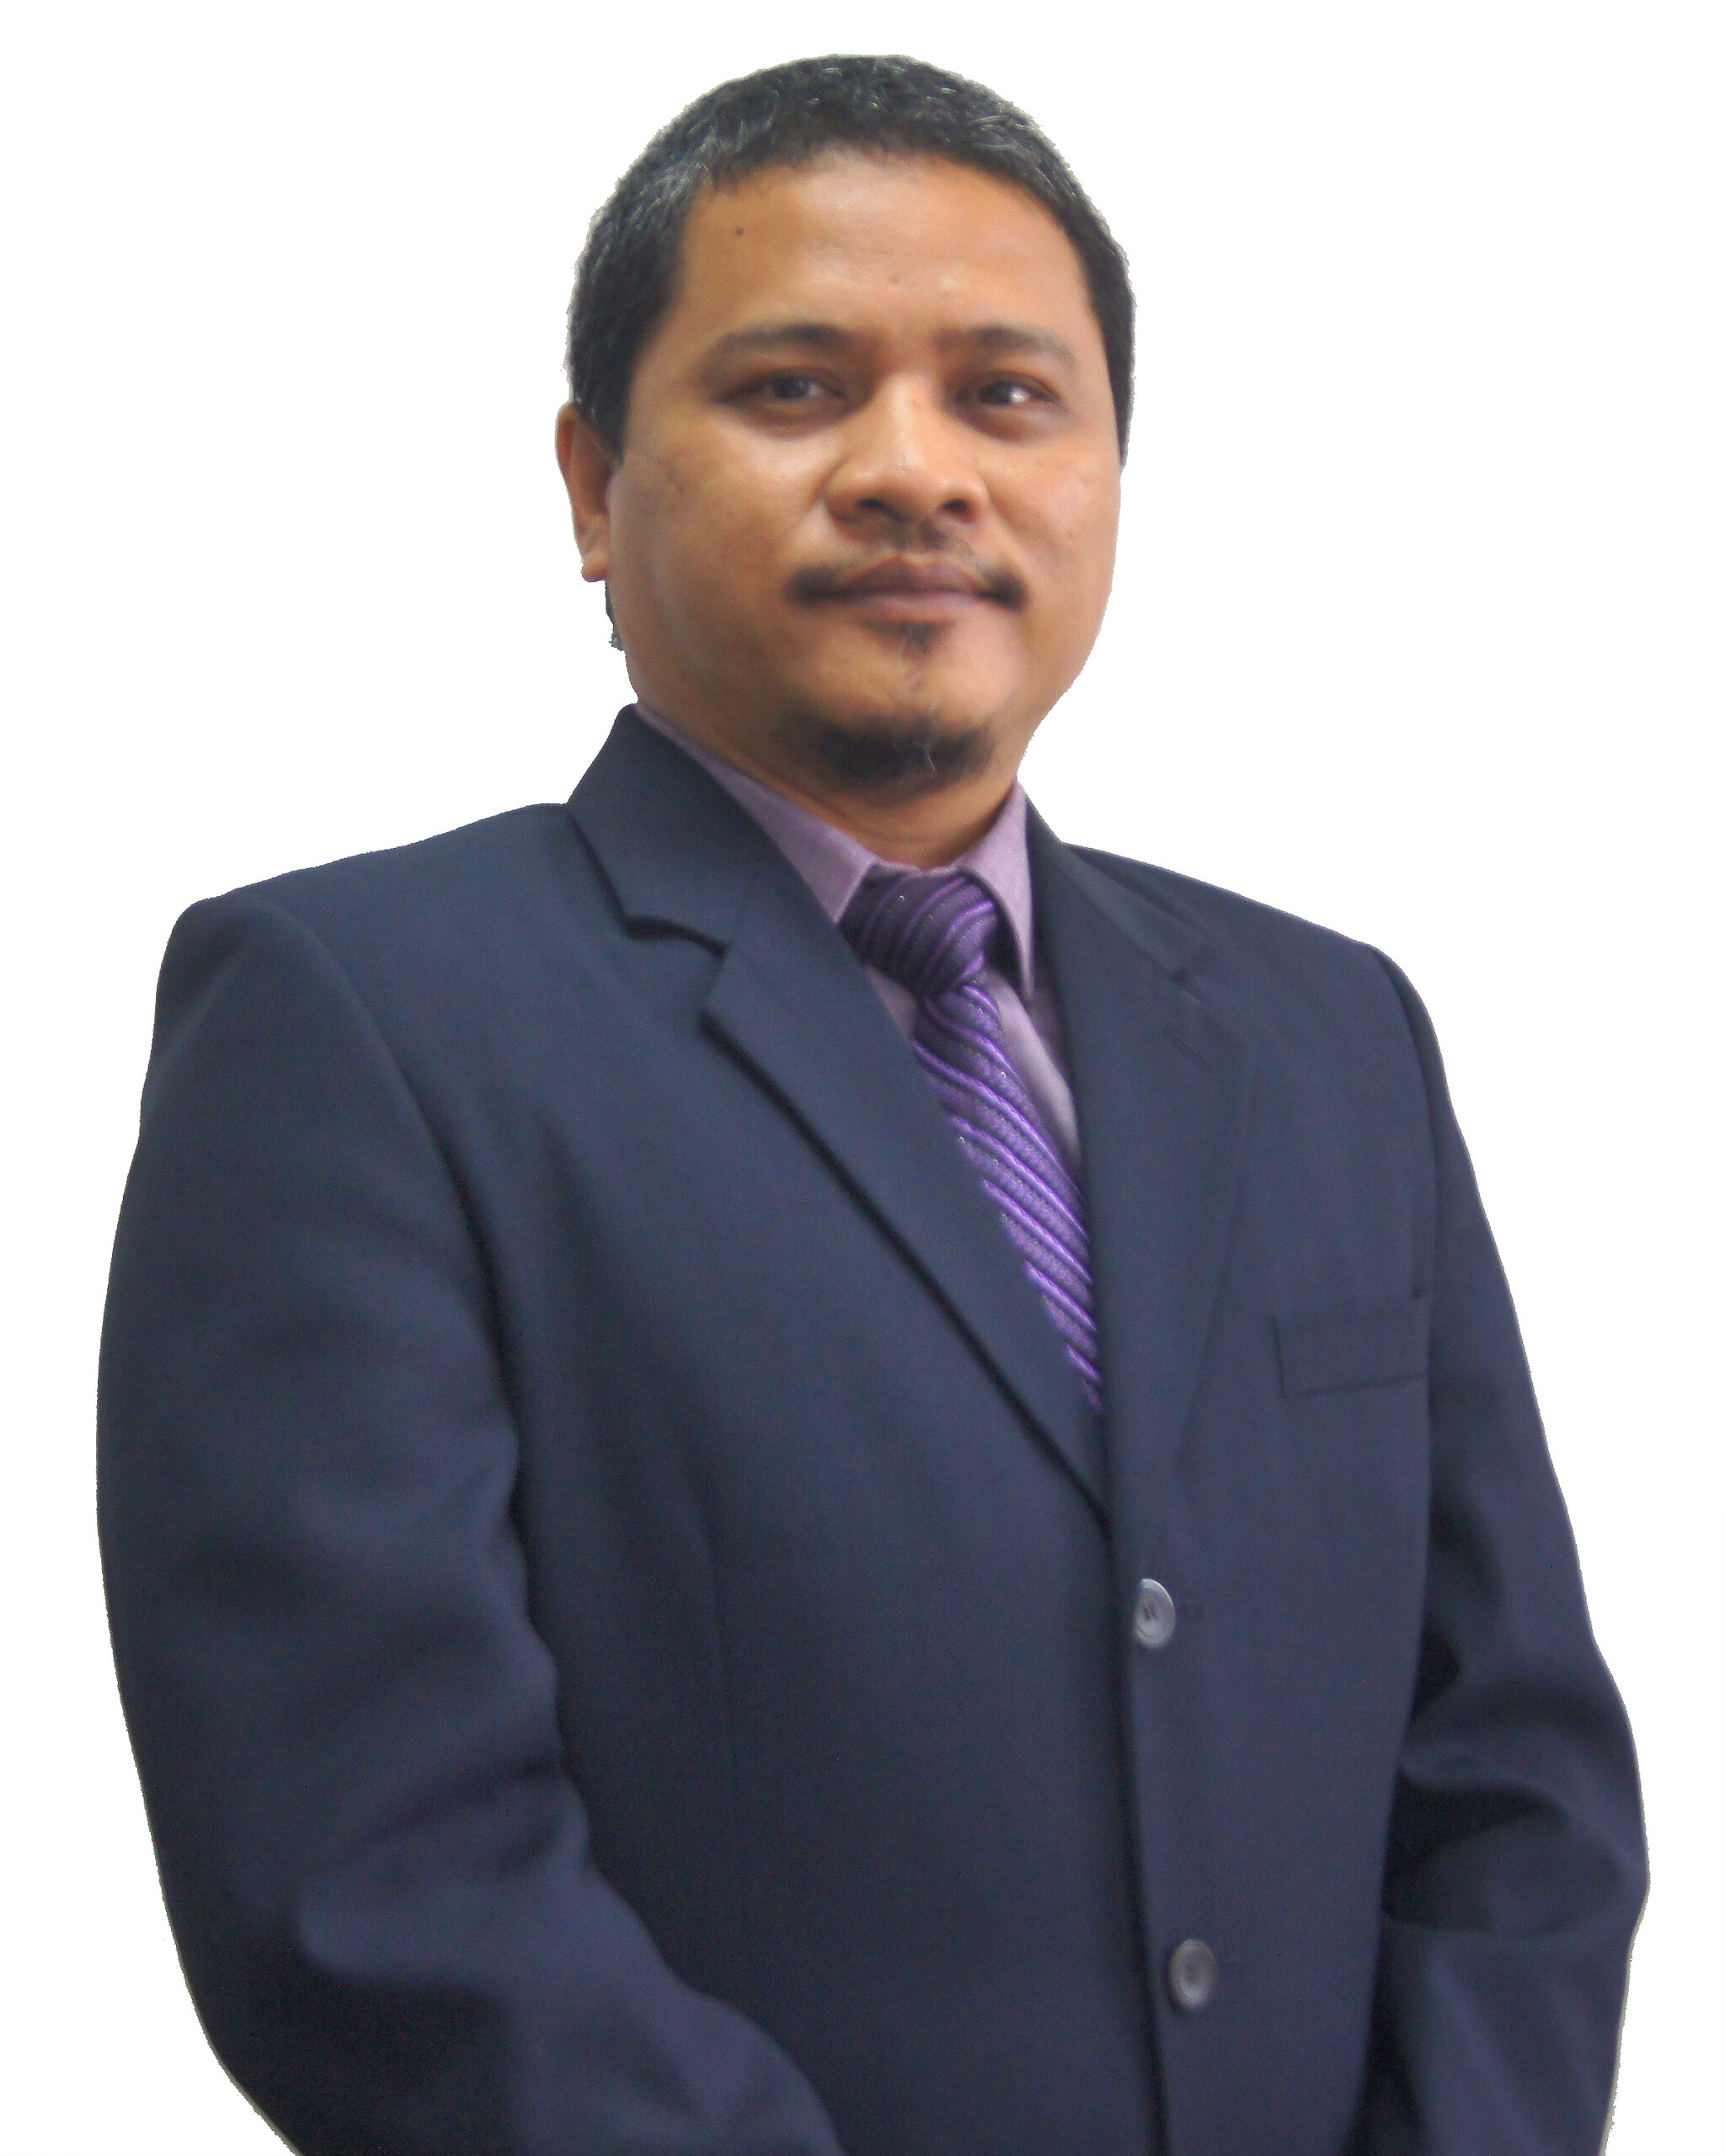 Mohamad Faizal Bin Wakiman